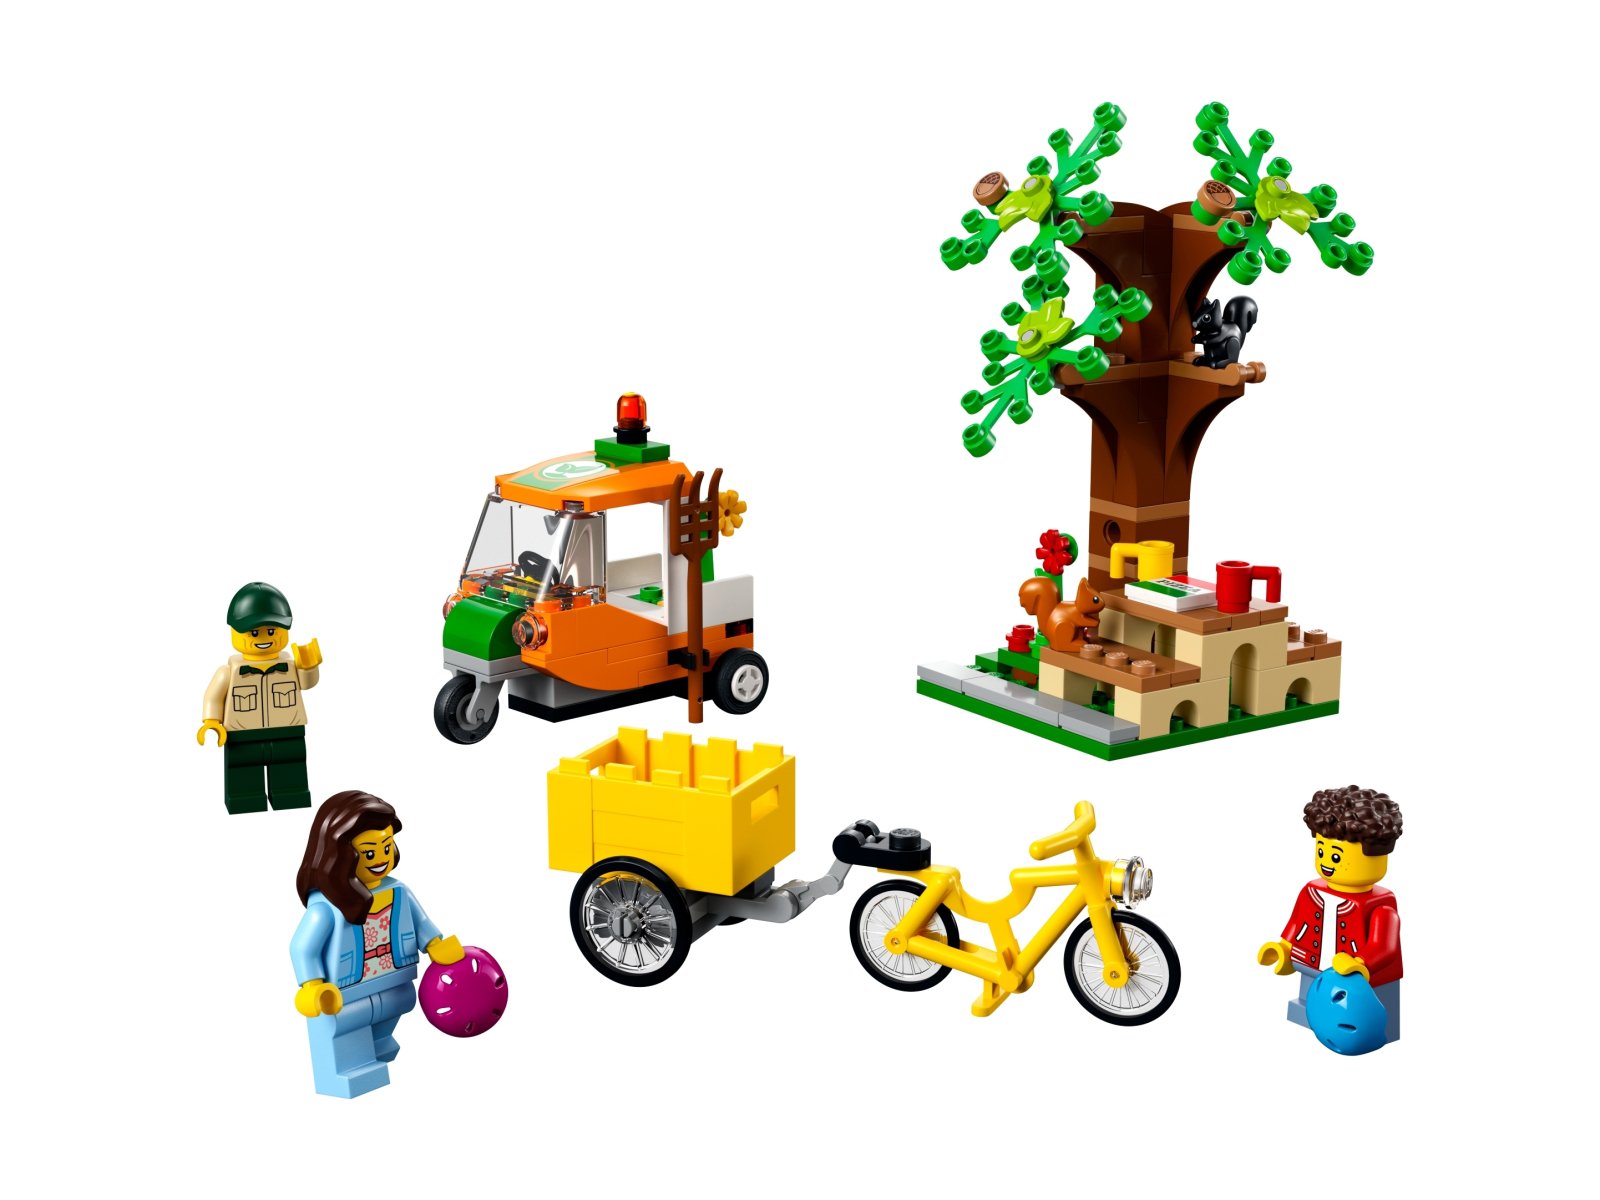 LEGO City 60326 Piknik w parku